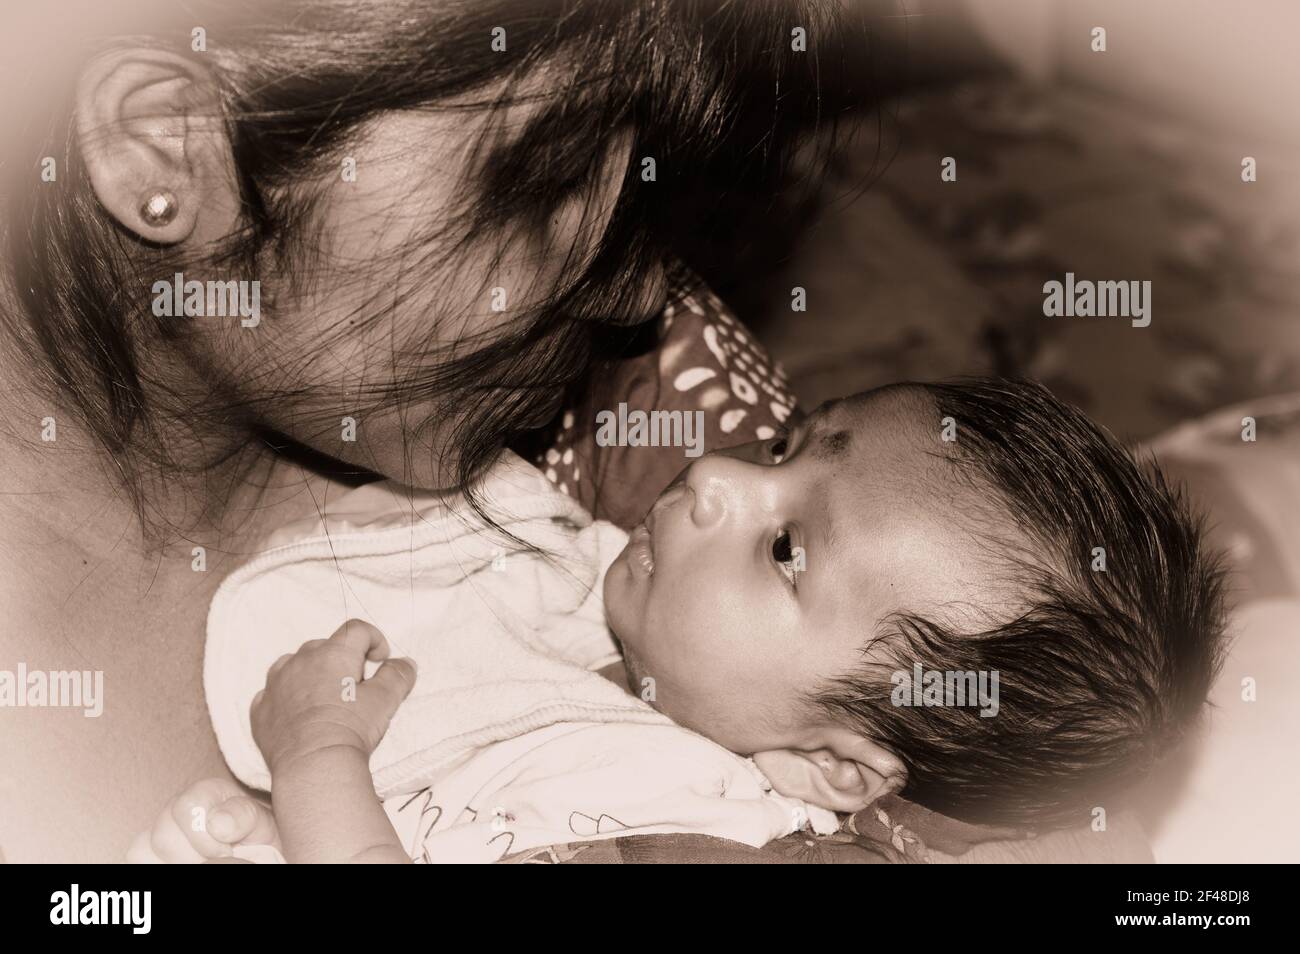 Adorabile mamma e lulling neonato figlio. Ritratto amorevole di mamma felice abbracciando bambino infante sulle mani. Giovane madre e bambino attaccme emotivo Foto Stock